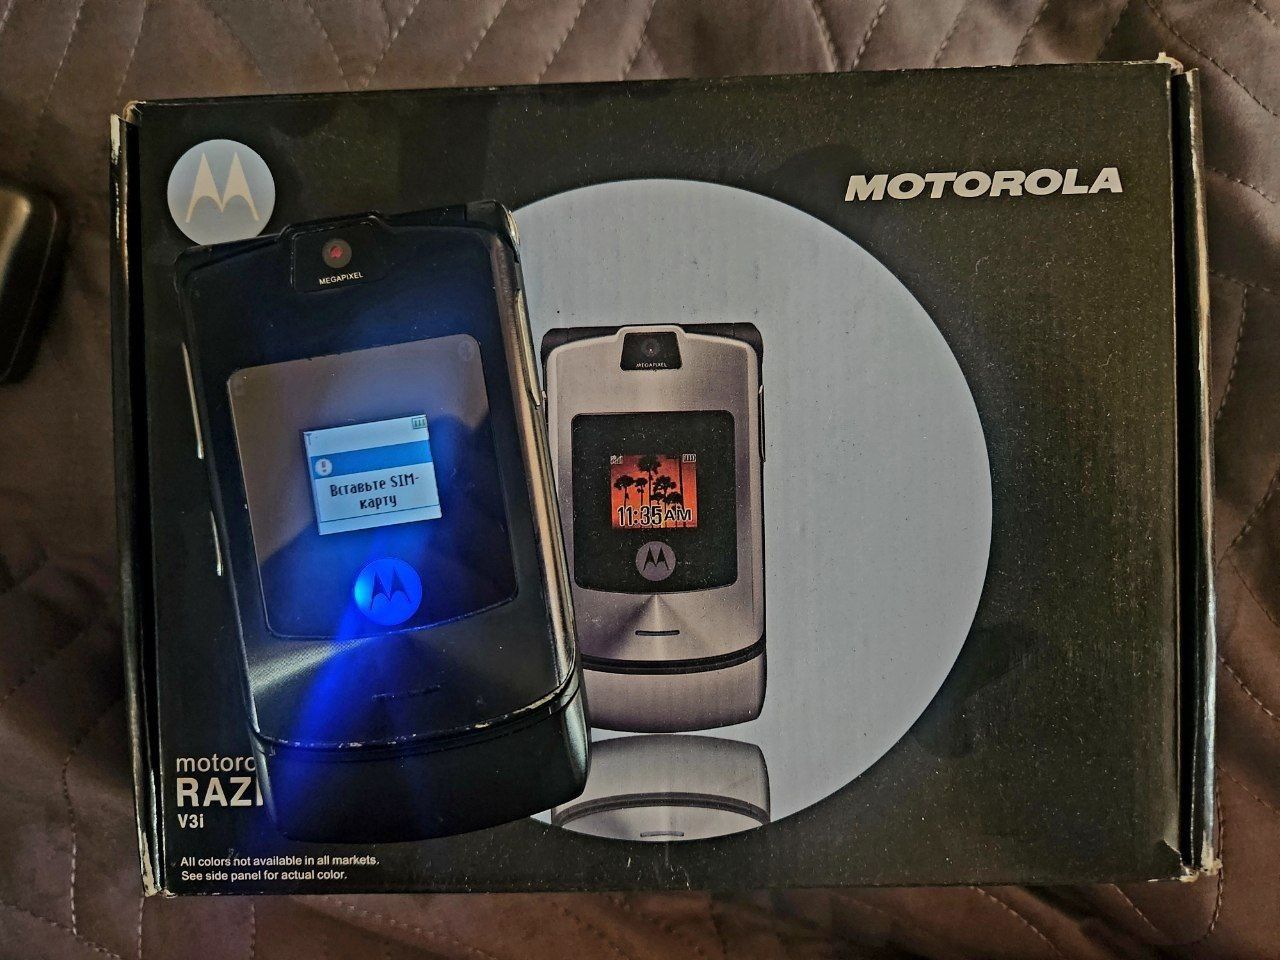 Motorola razor v3i